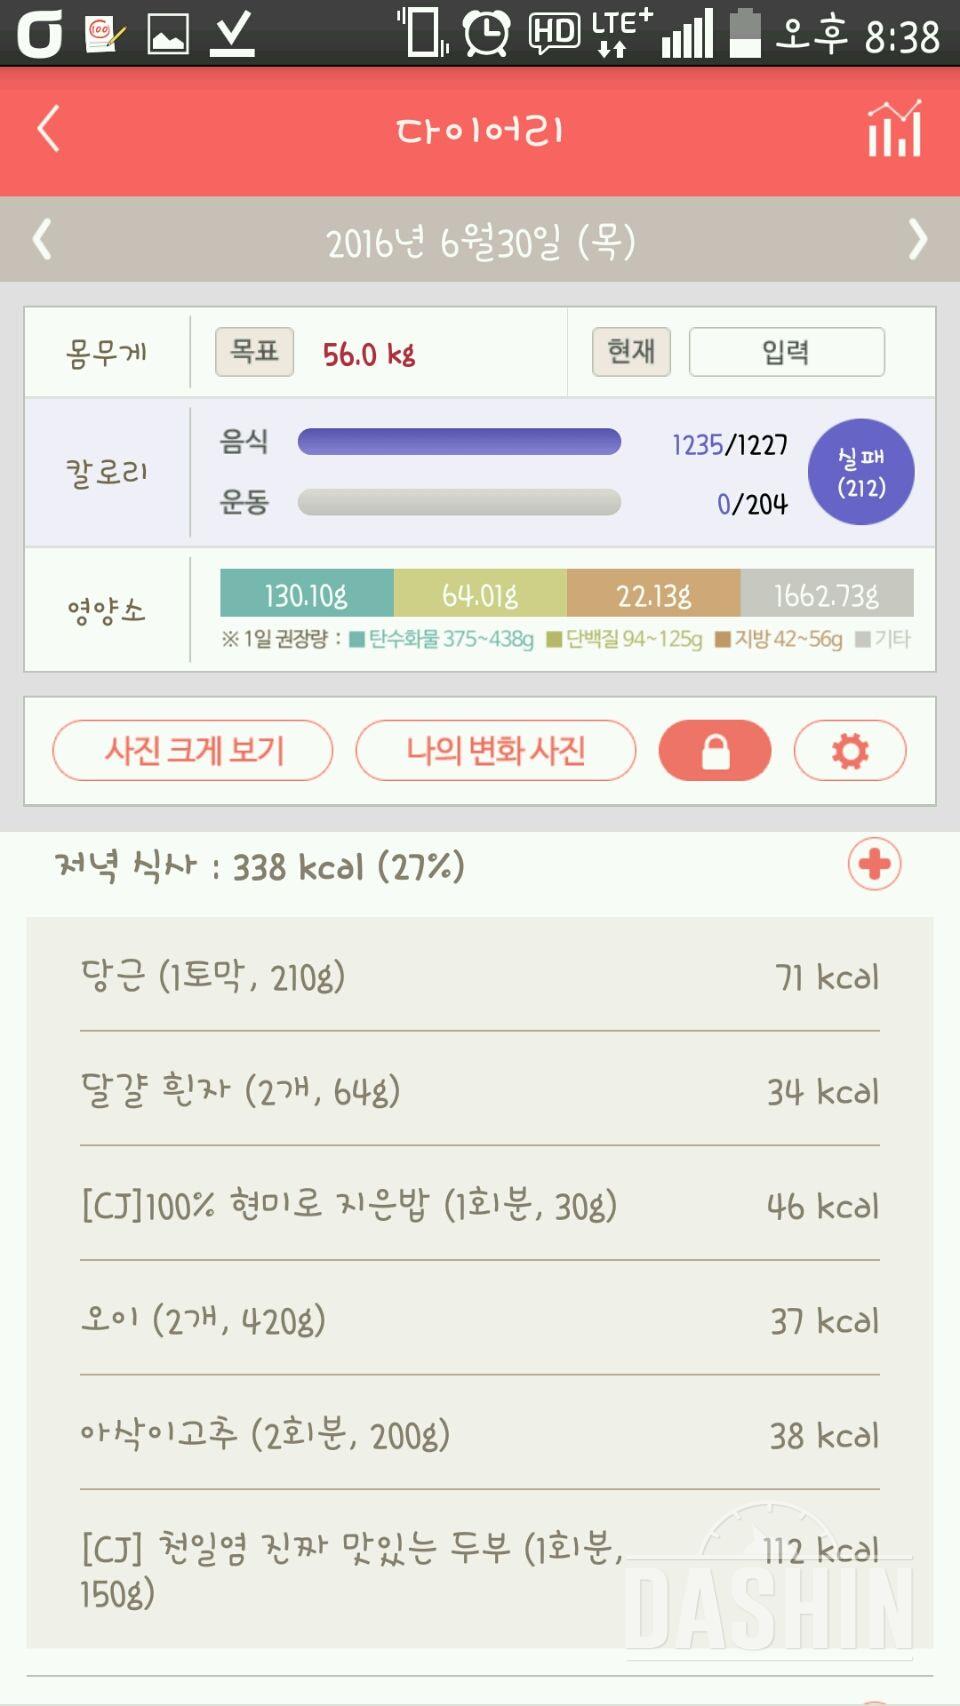 다신 5기] 11일차 운동 식단 완료!!